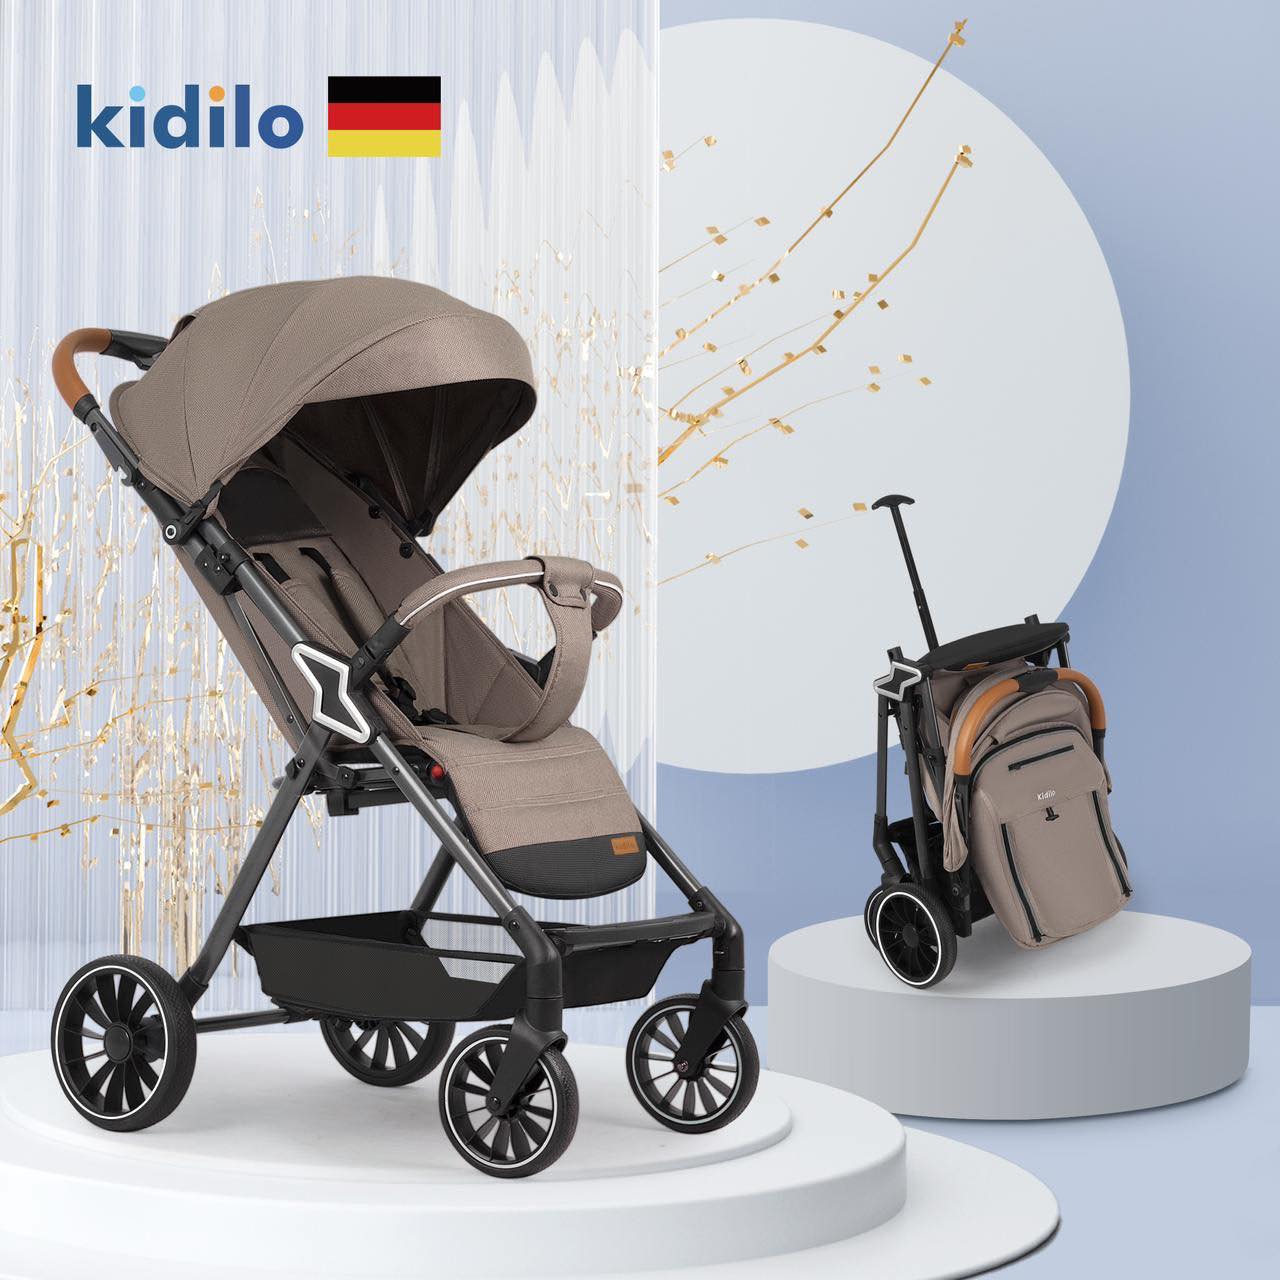 Baby stroller model Kidilo Z2